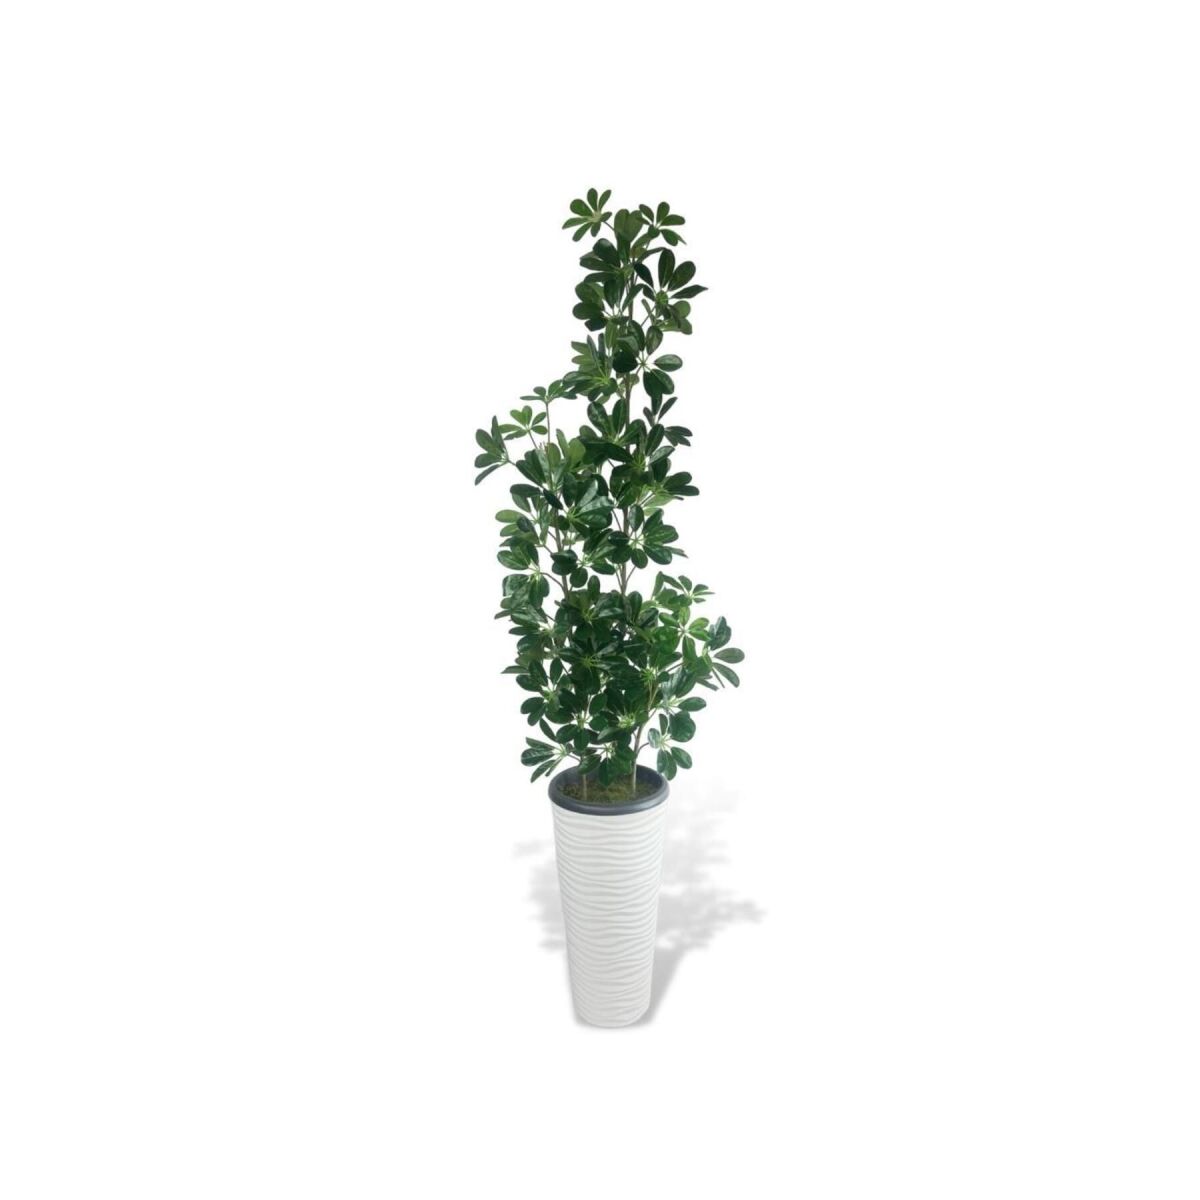 Yapay Ağaç Şeflera 3 Gövdeli 195X60Cm Beyaz Kumsal Vazoda Salon Çiçeği